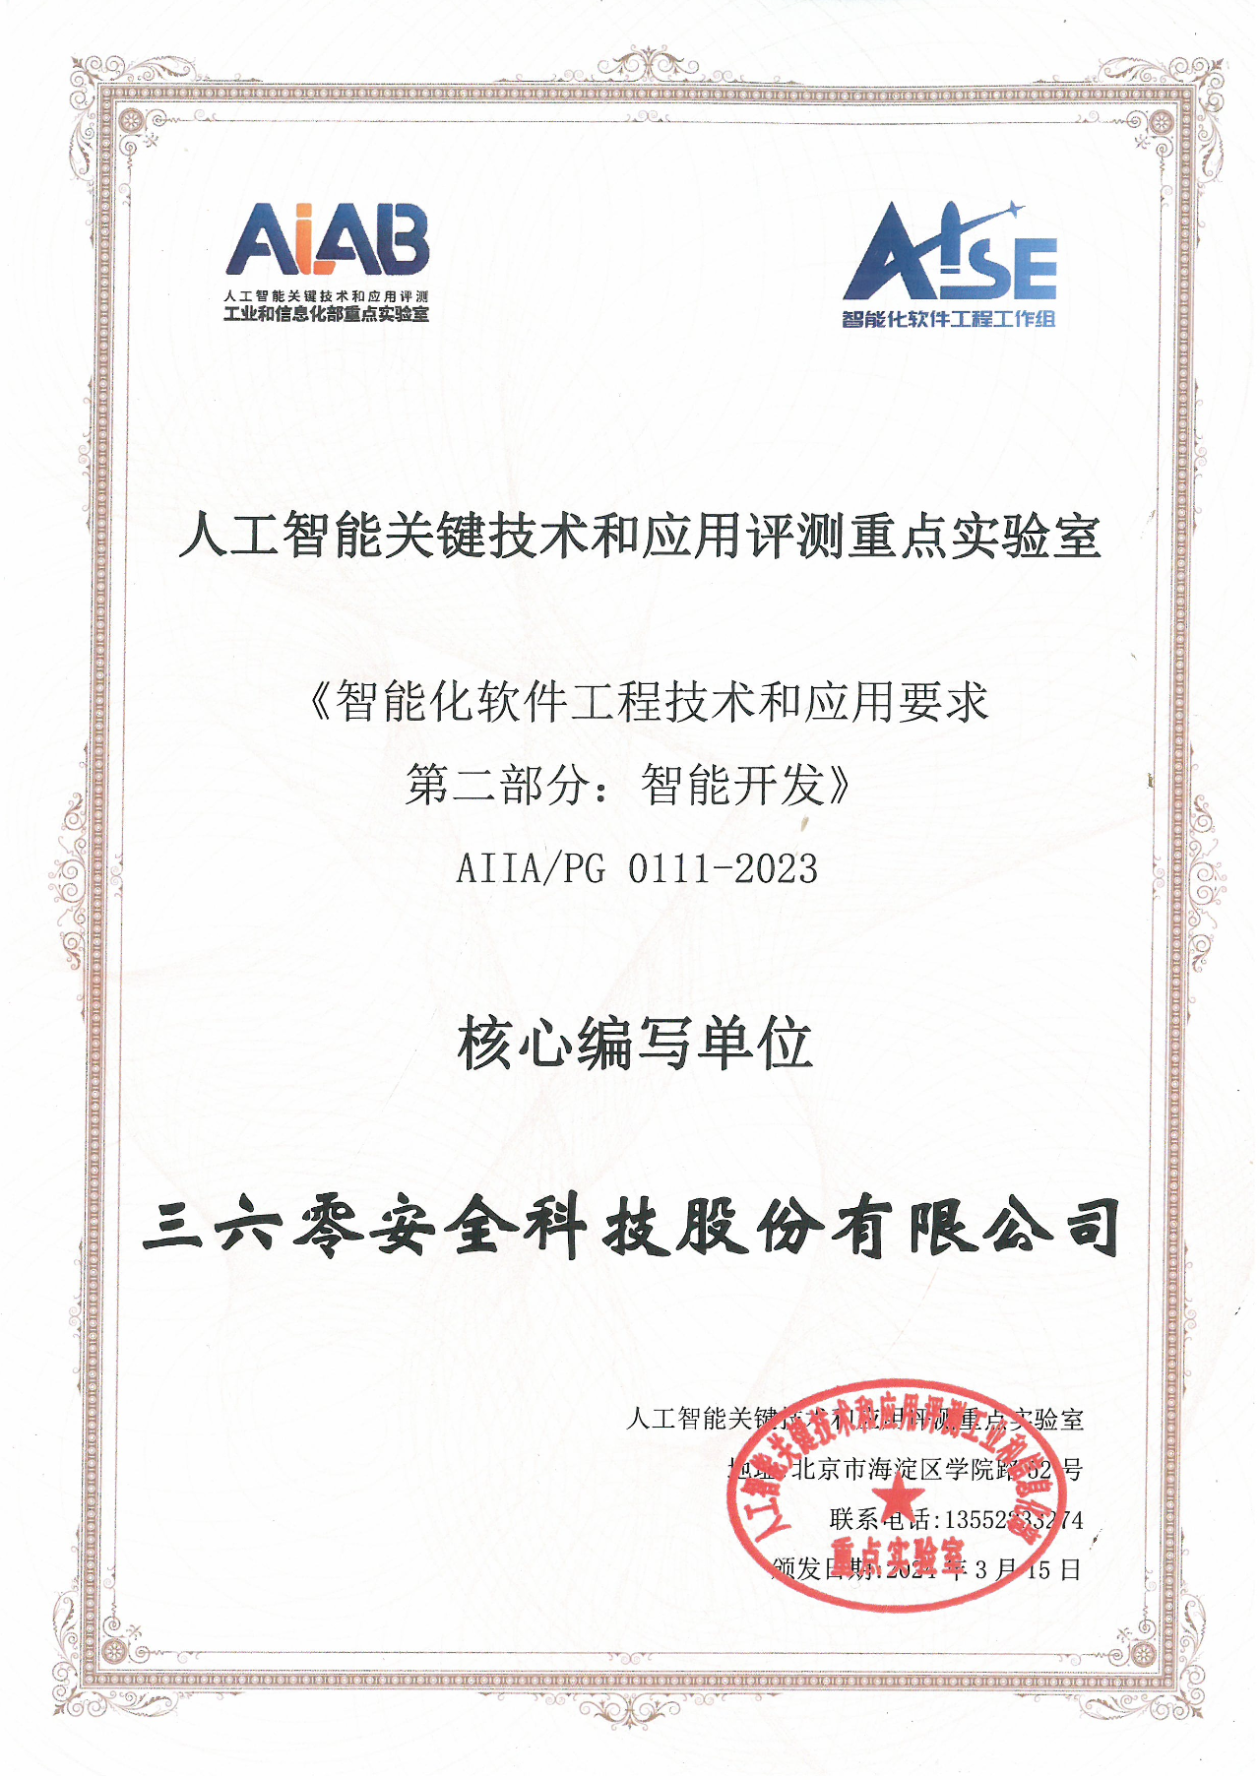 三六零获颁中国信通院智能开发标准核心编写单位